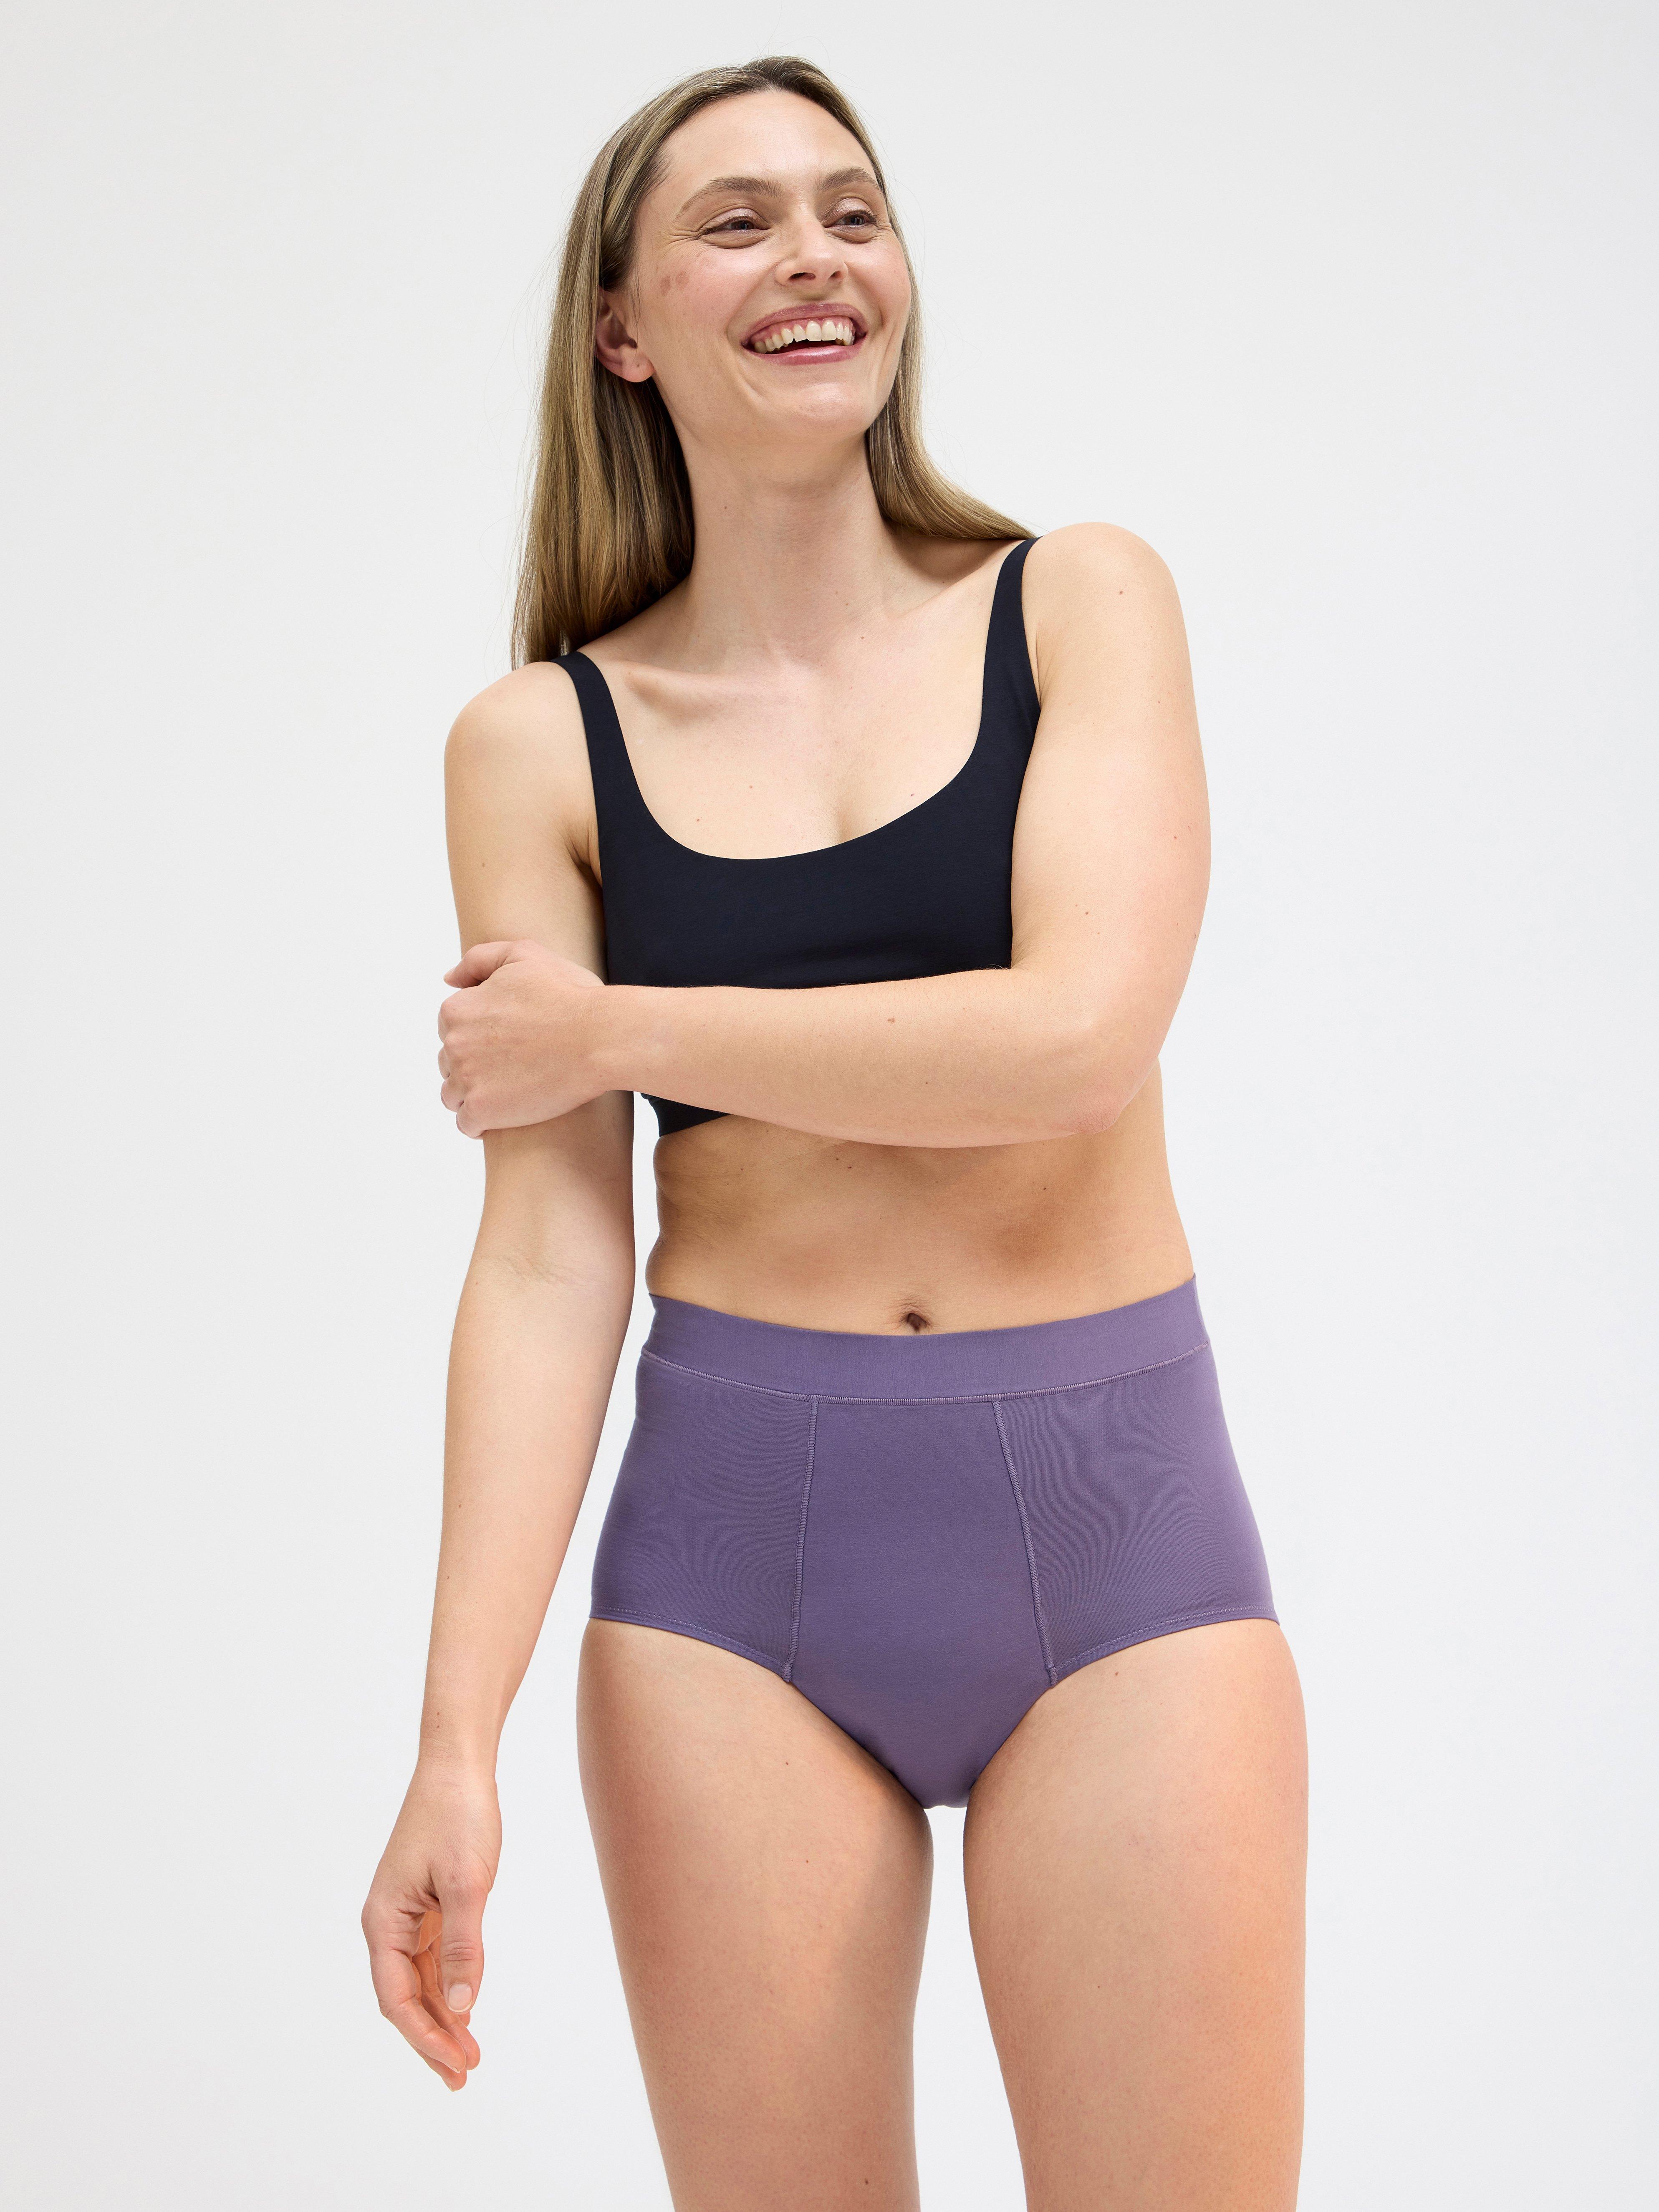 Lindex Underwear - Women - 158 products